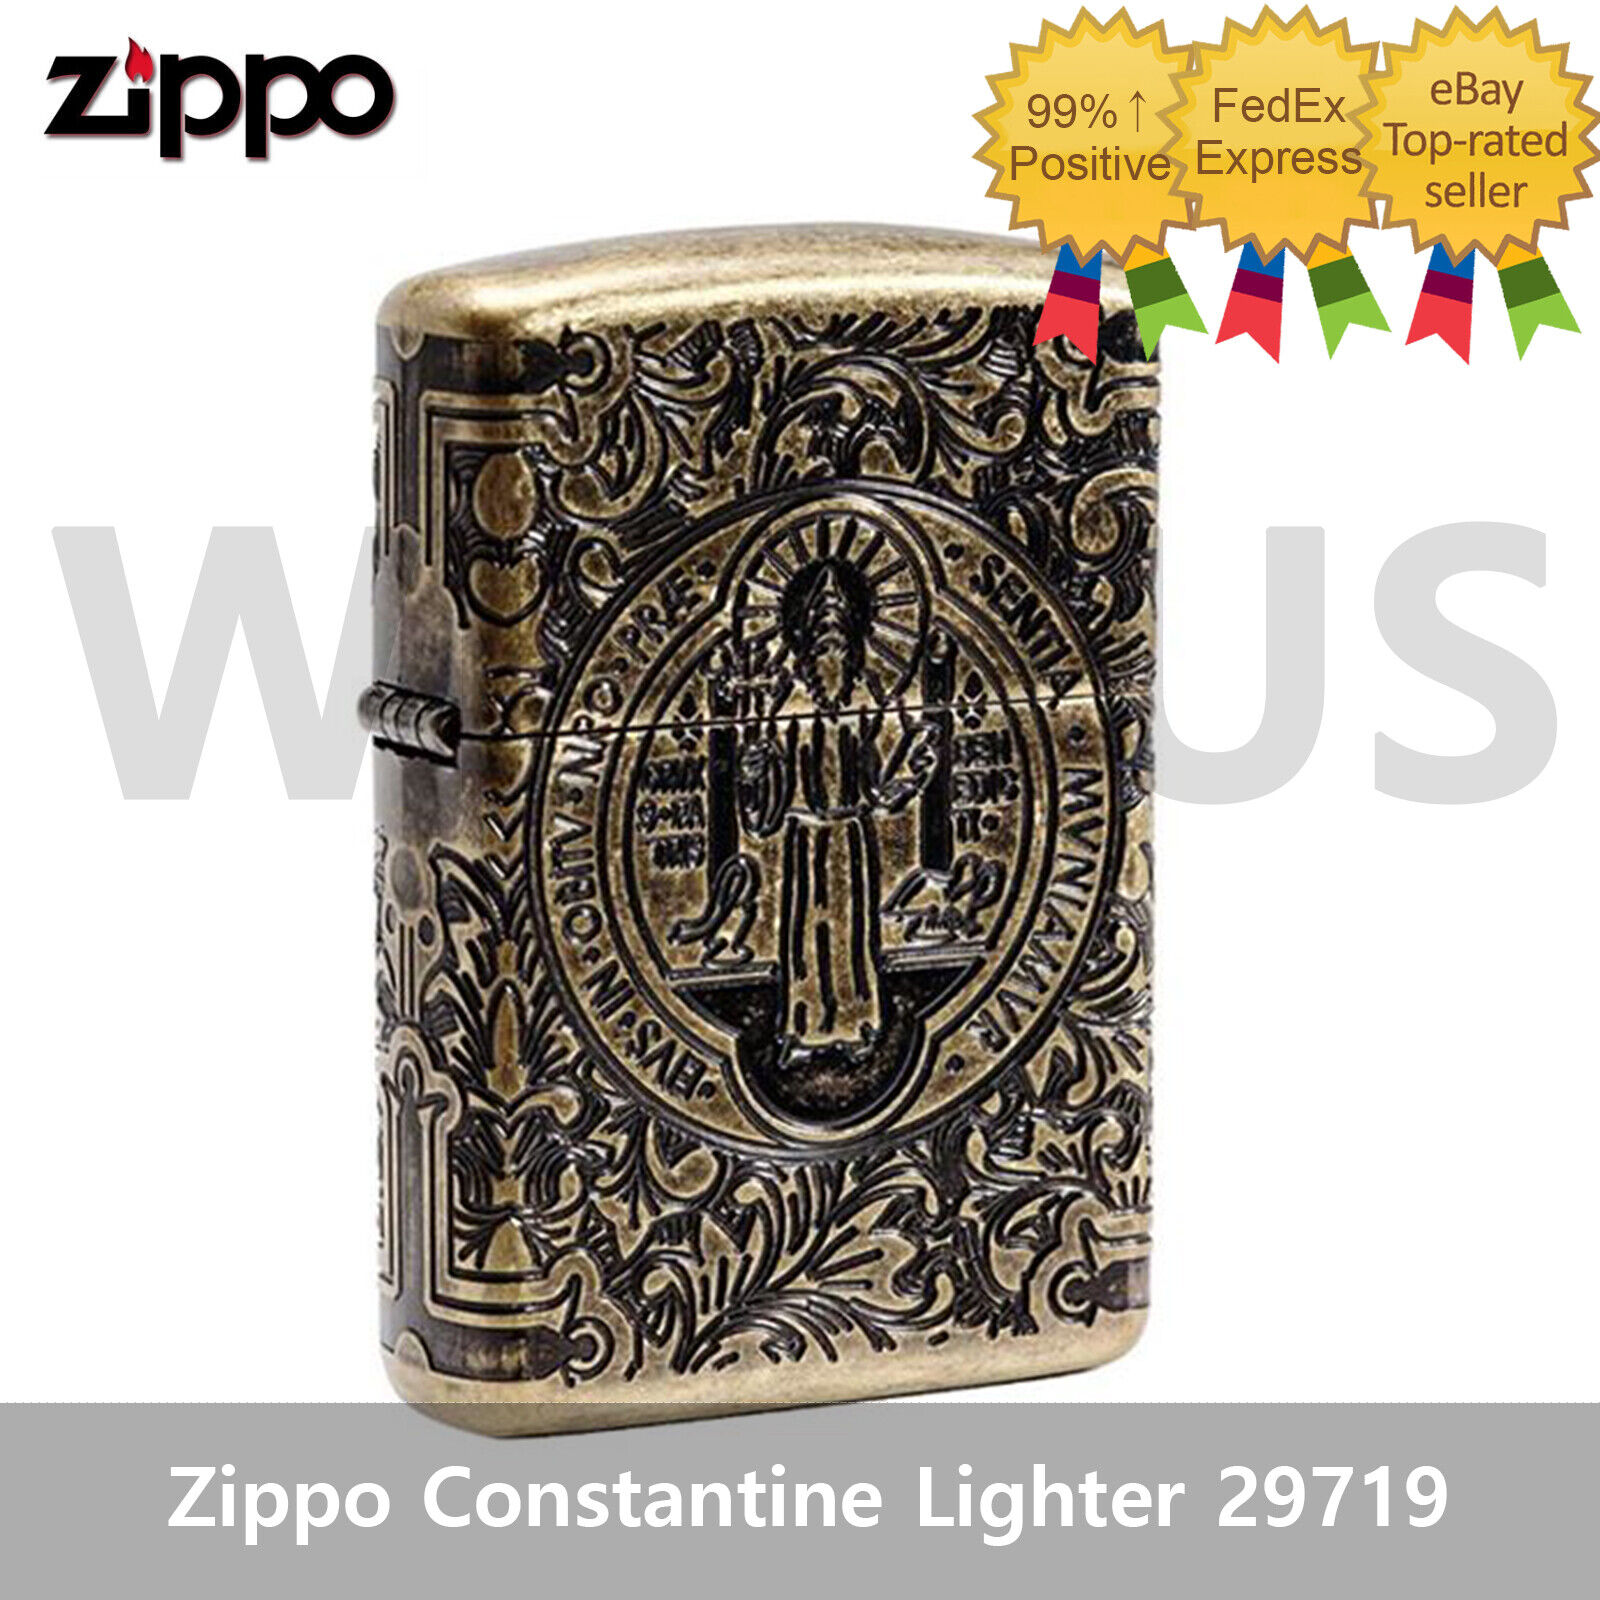 Zippo Constantine Windproof Armor St. Benedict Design Lighter 29719 New In Box